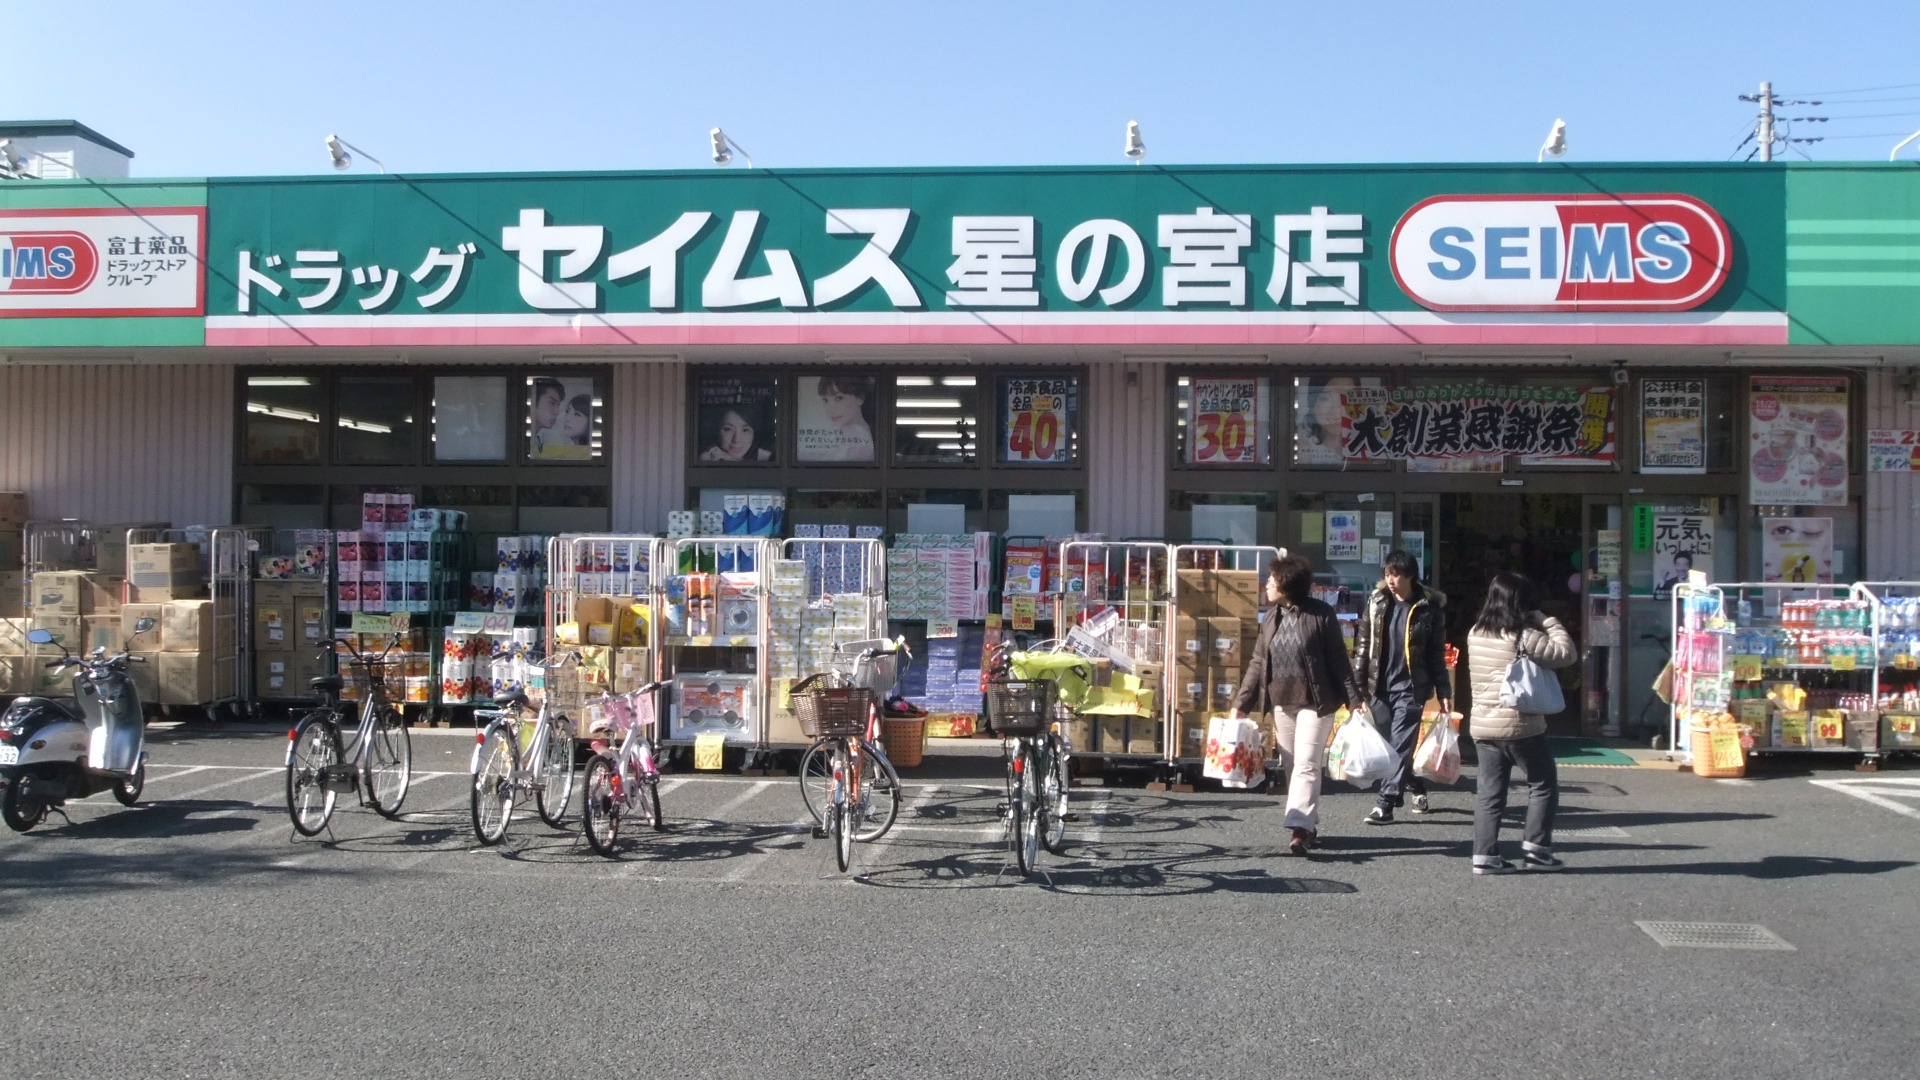 Dorakkusutoa. Drag Seimusu Hoshinomiya shop 1043m until (drugstore)